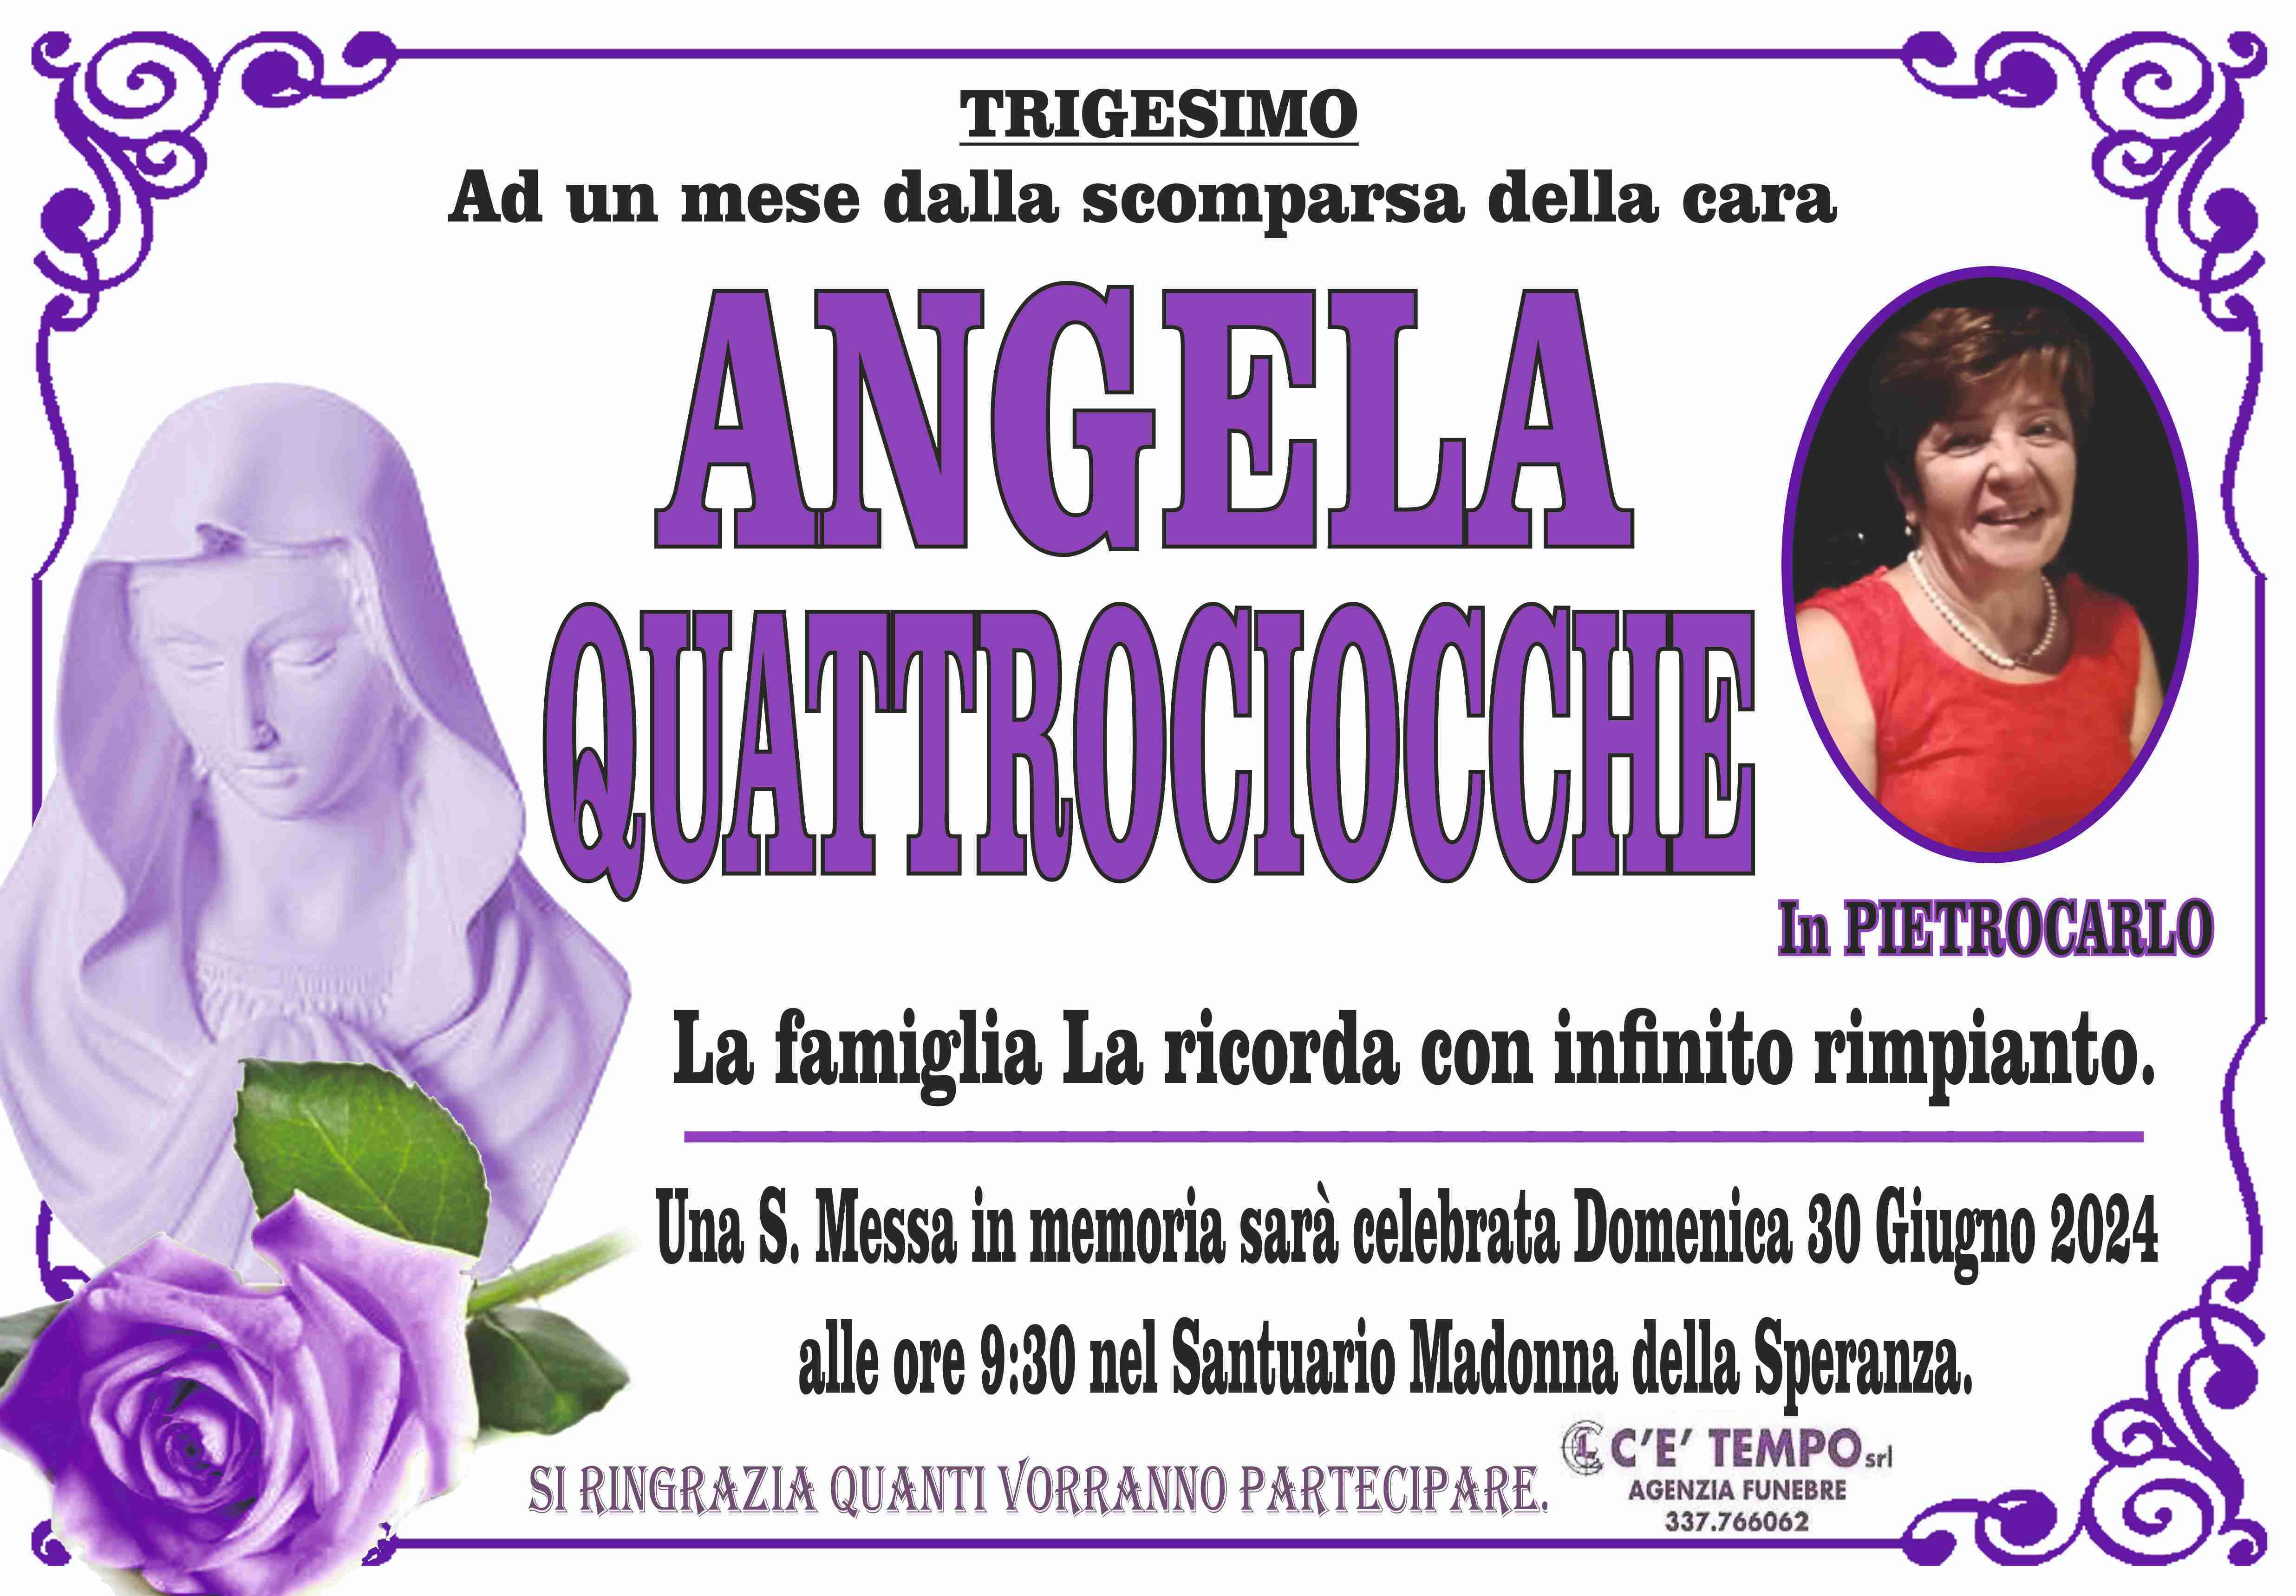 Angela Quattrociocche